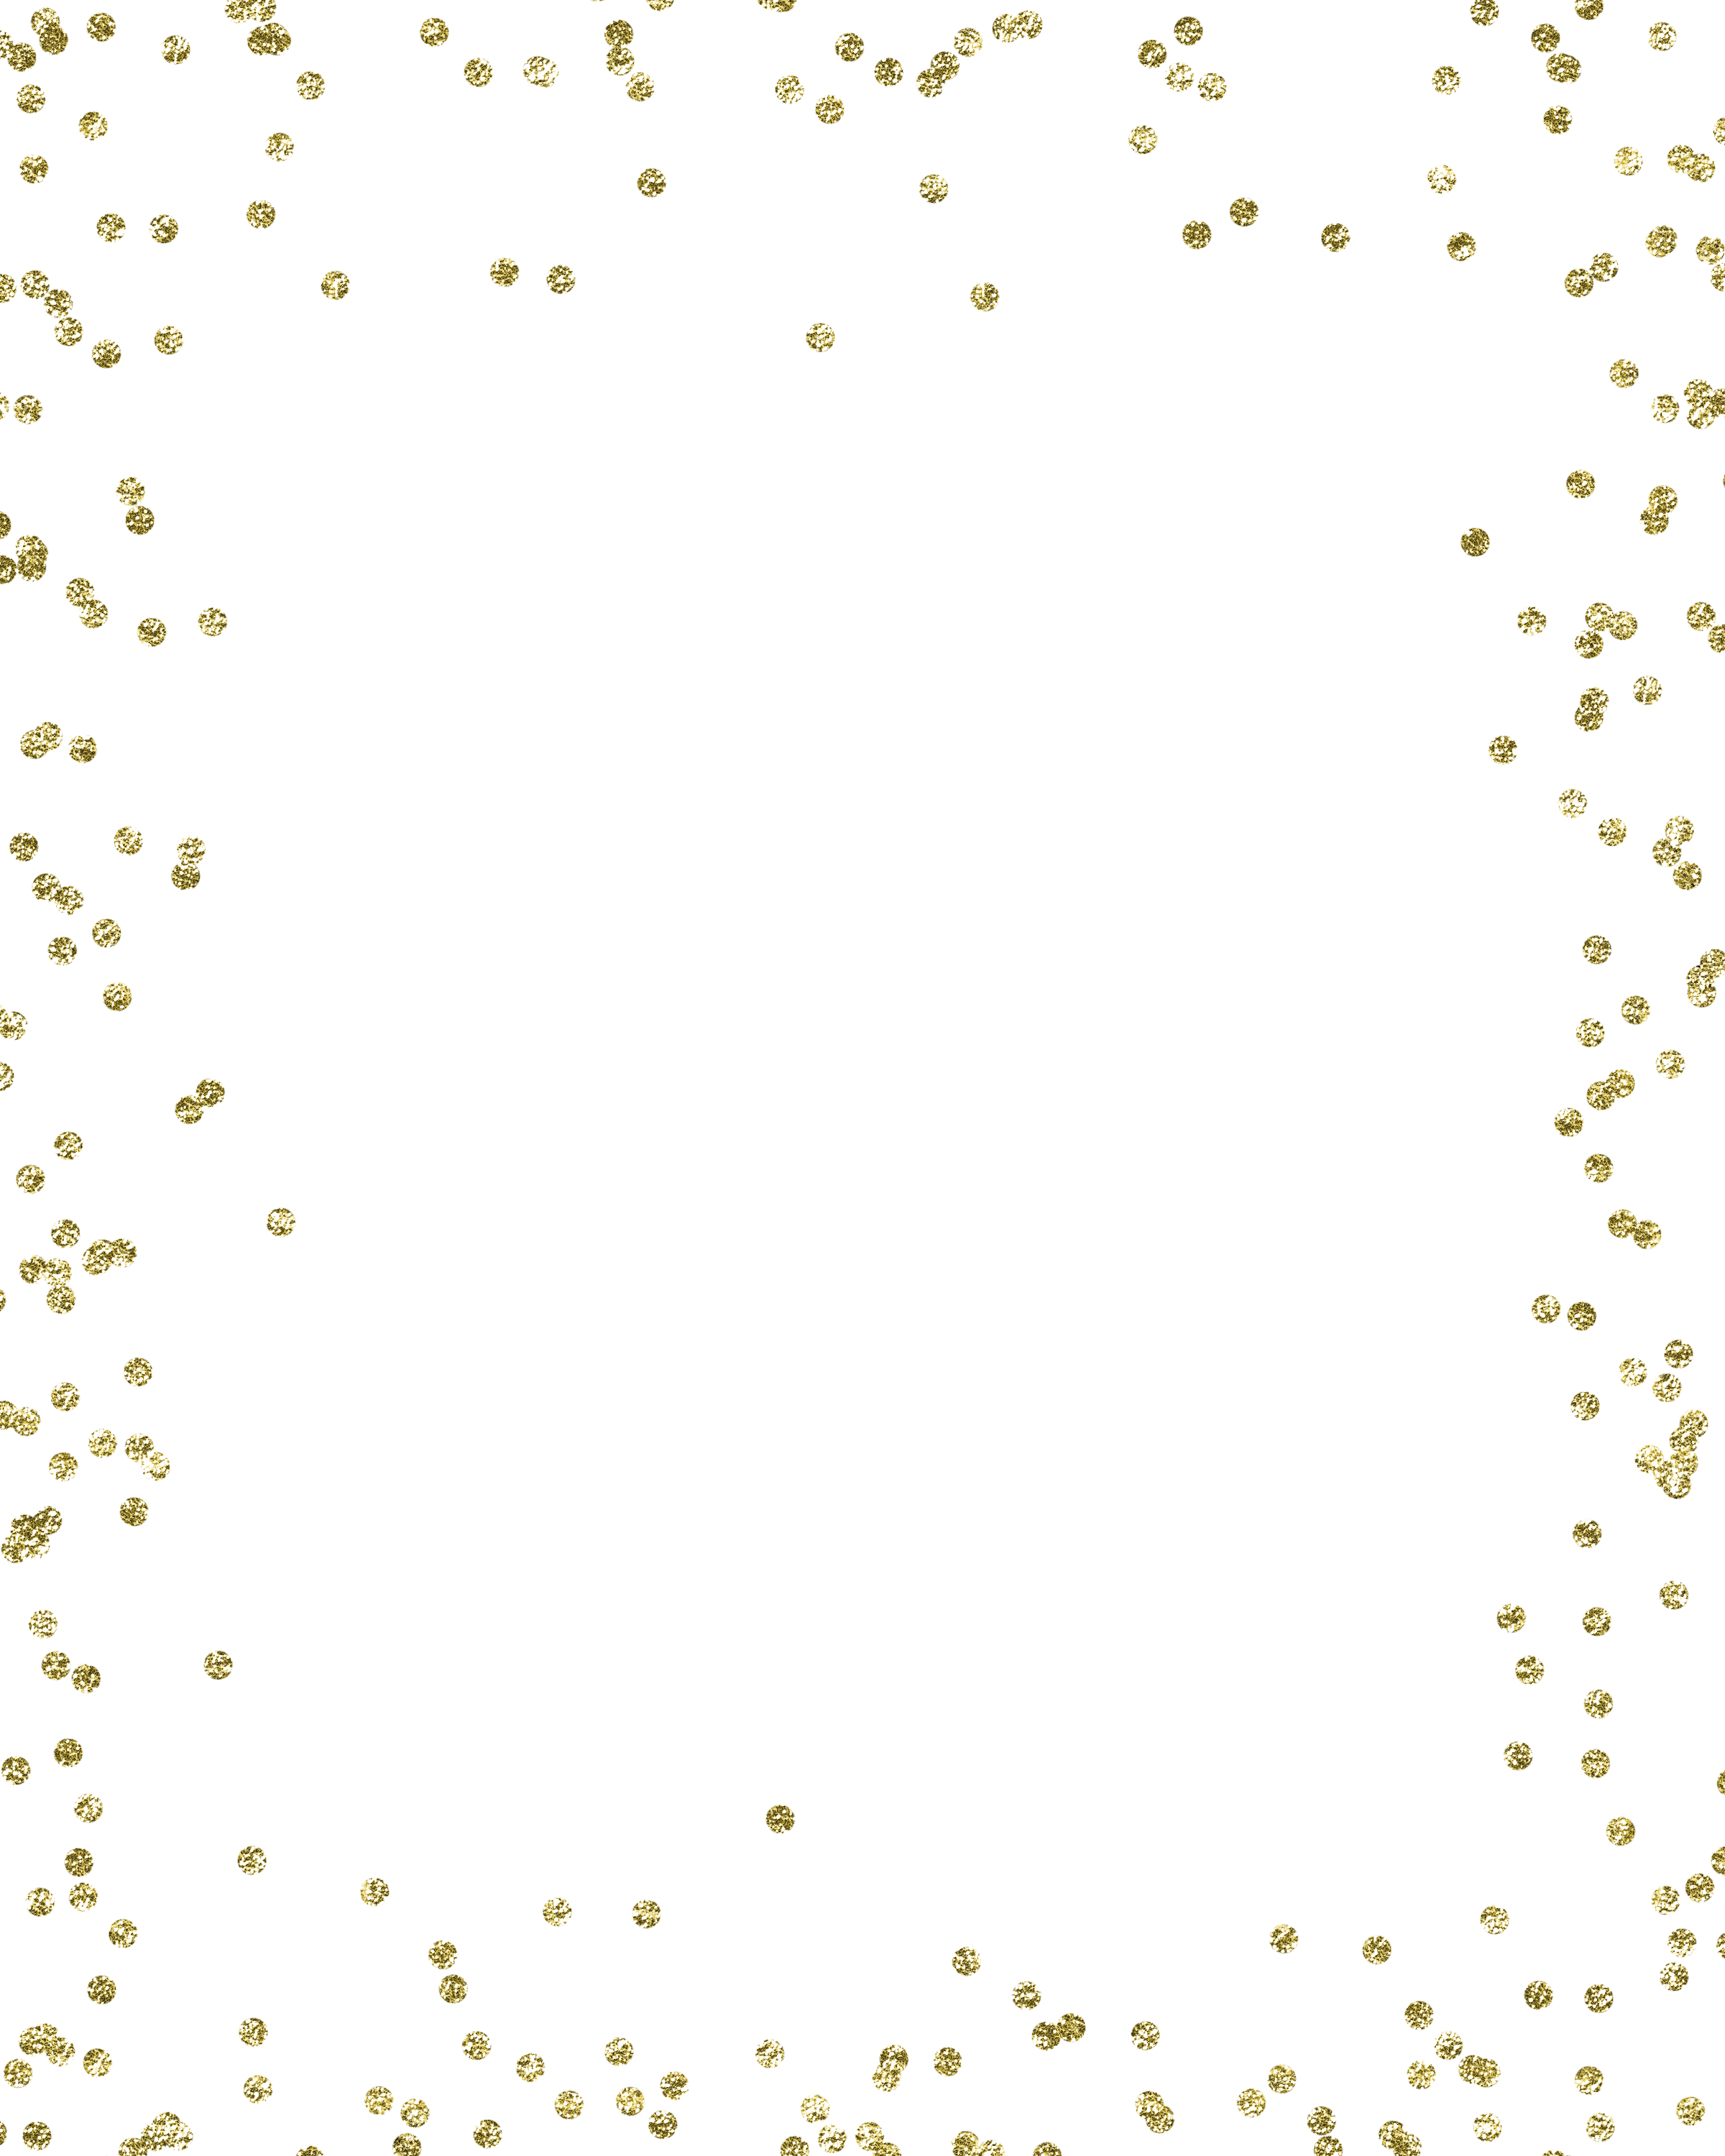 Confetti Glitter Gold PNG File HD Clipart